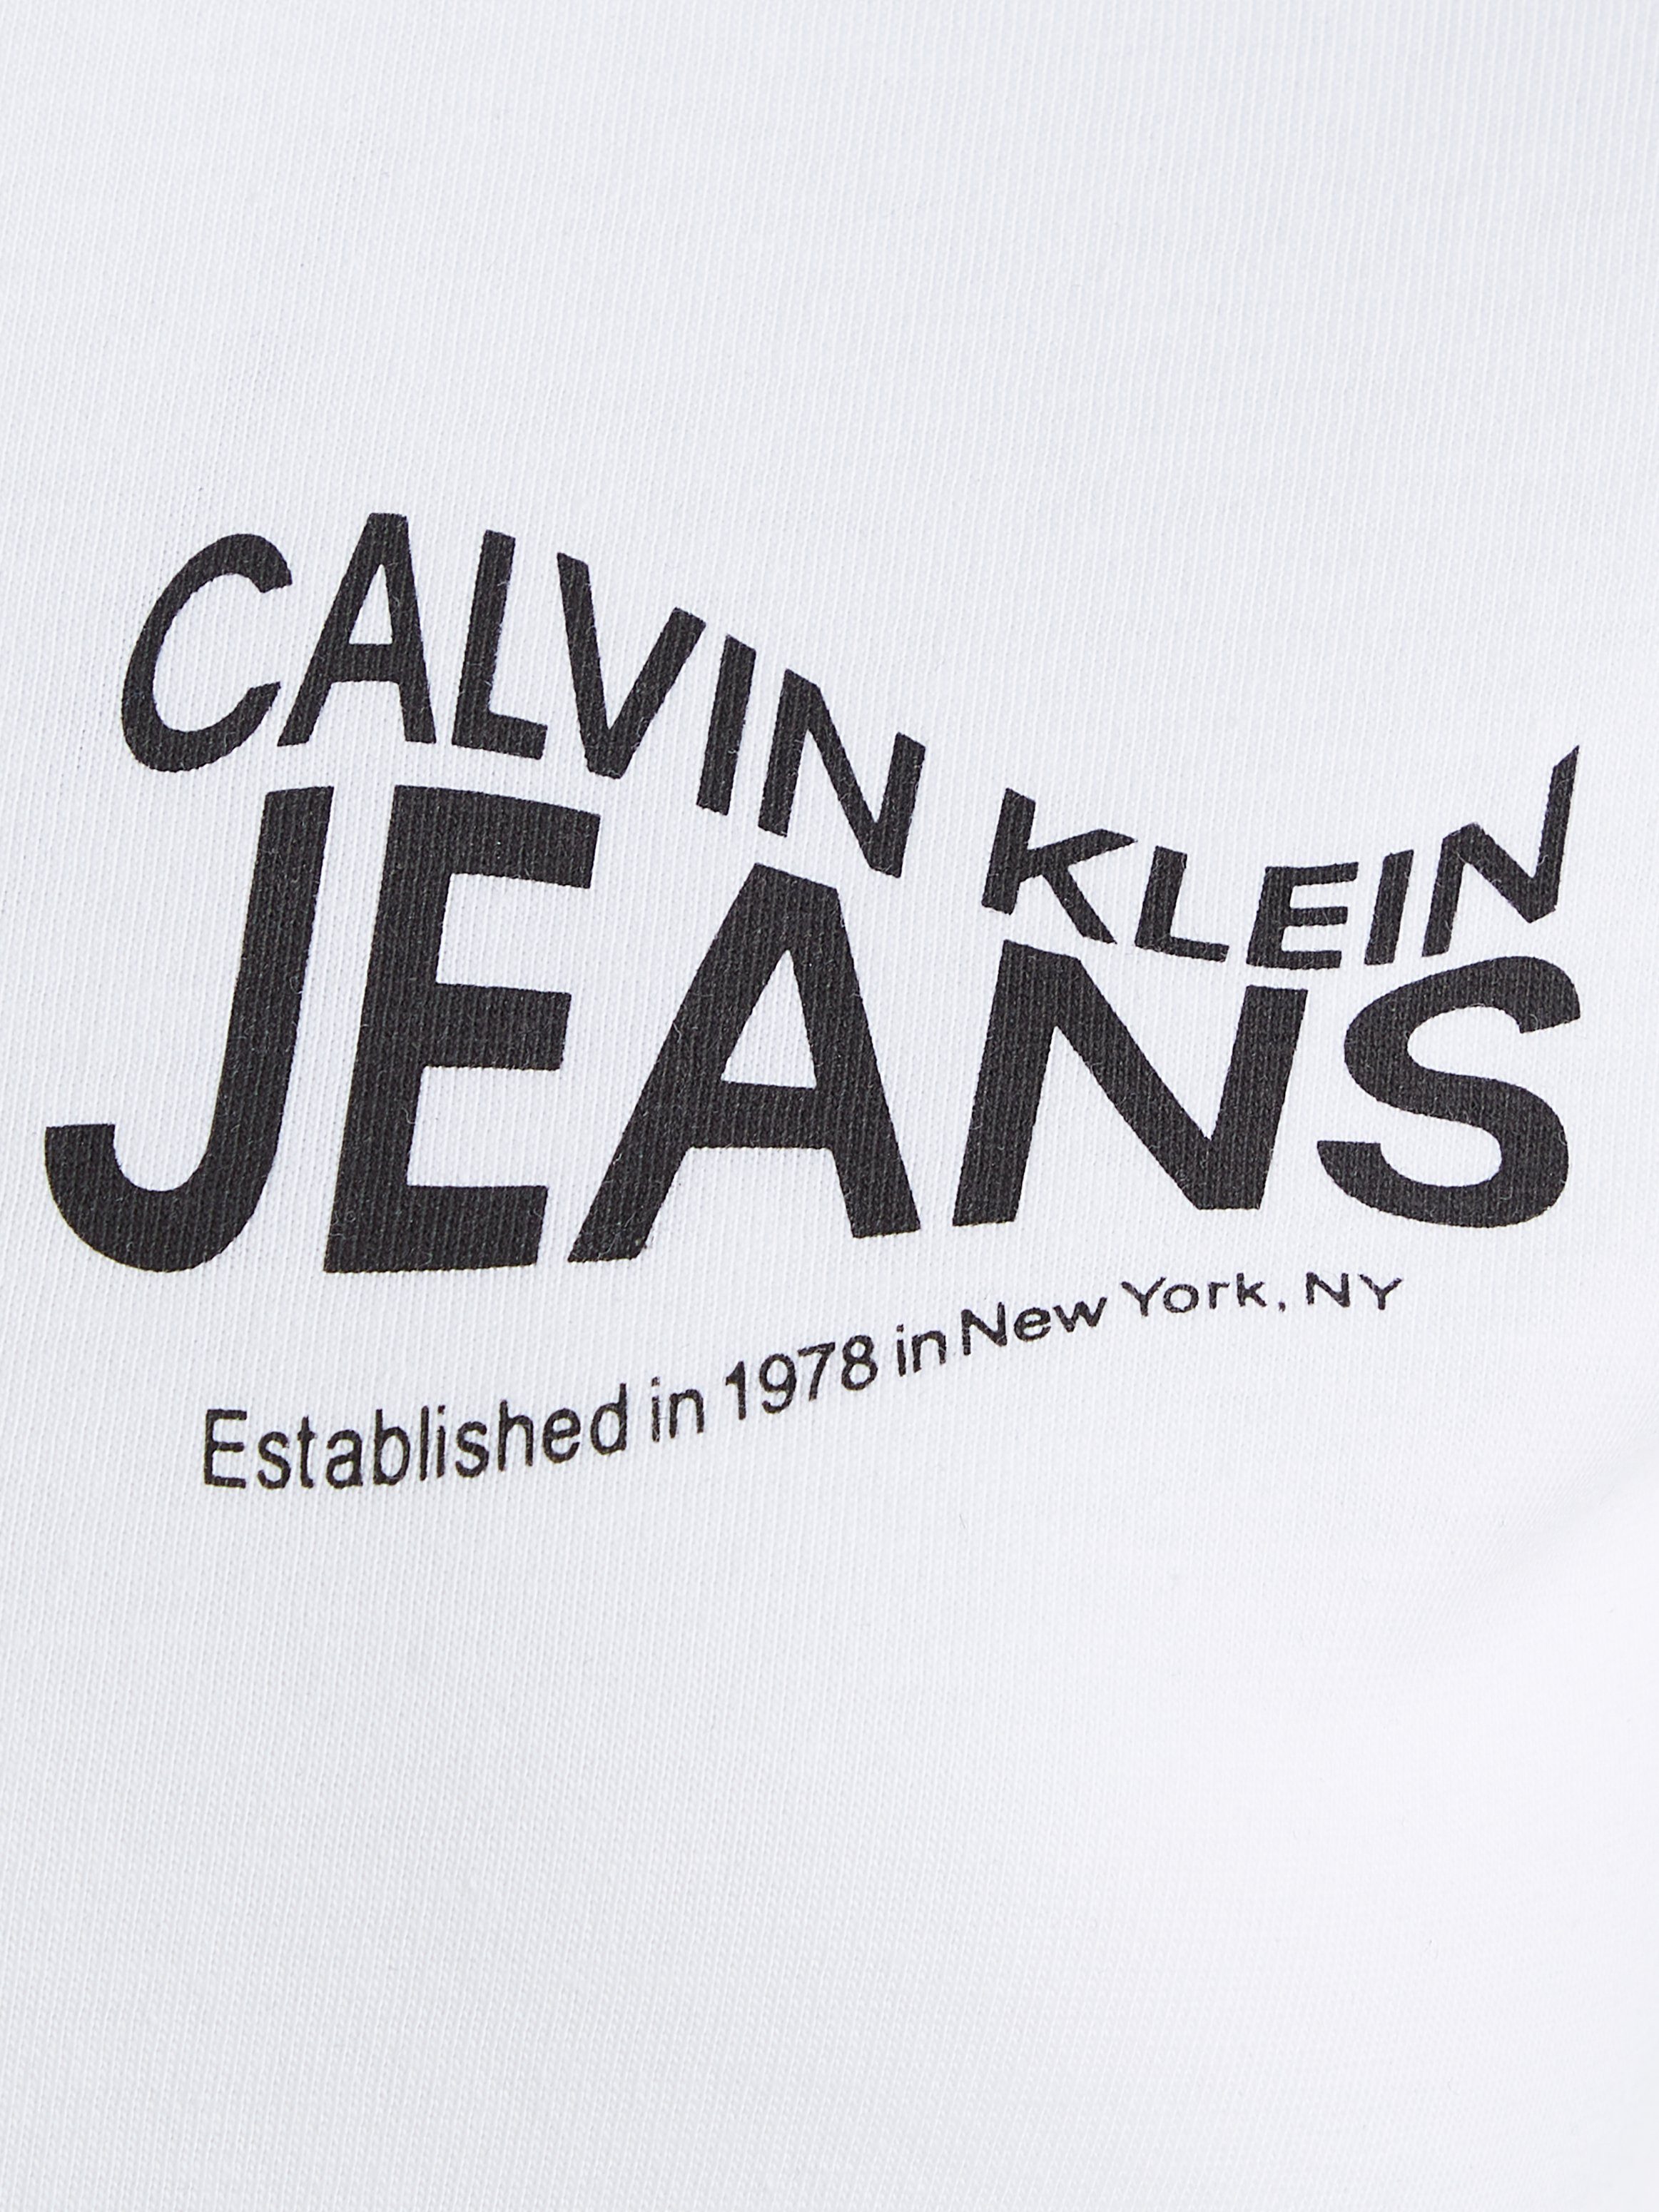 Klein T-Shirt Calvin weiß Jeans